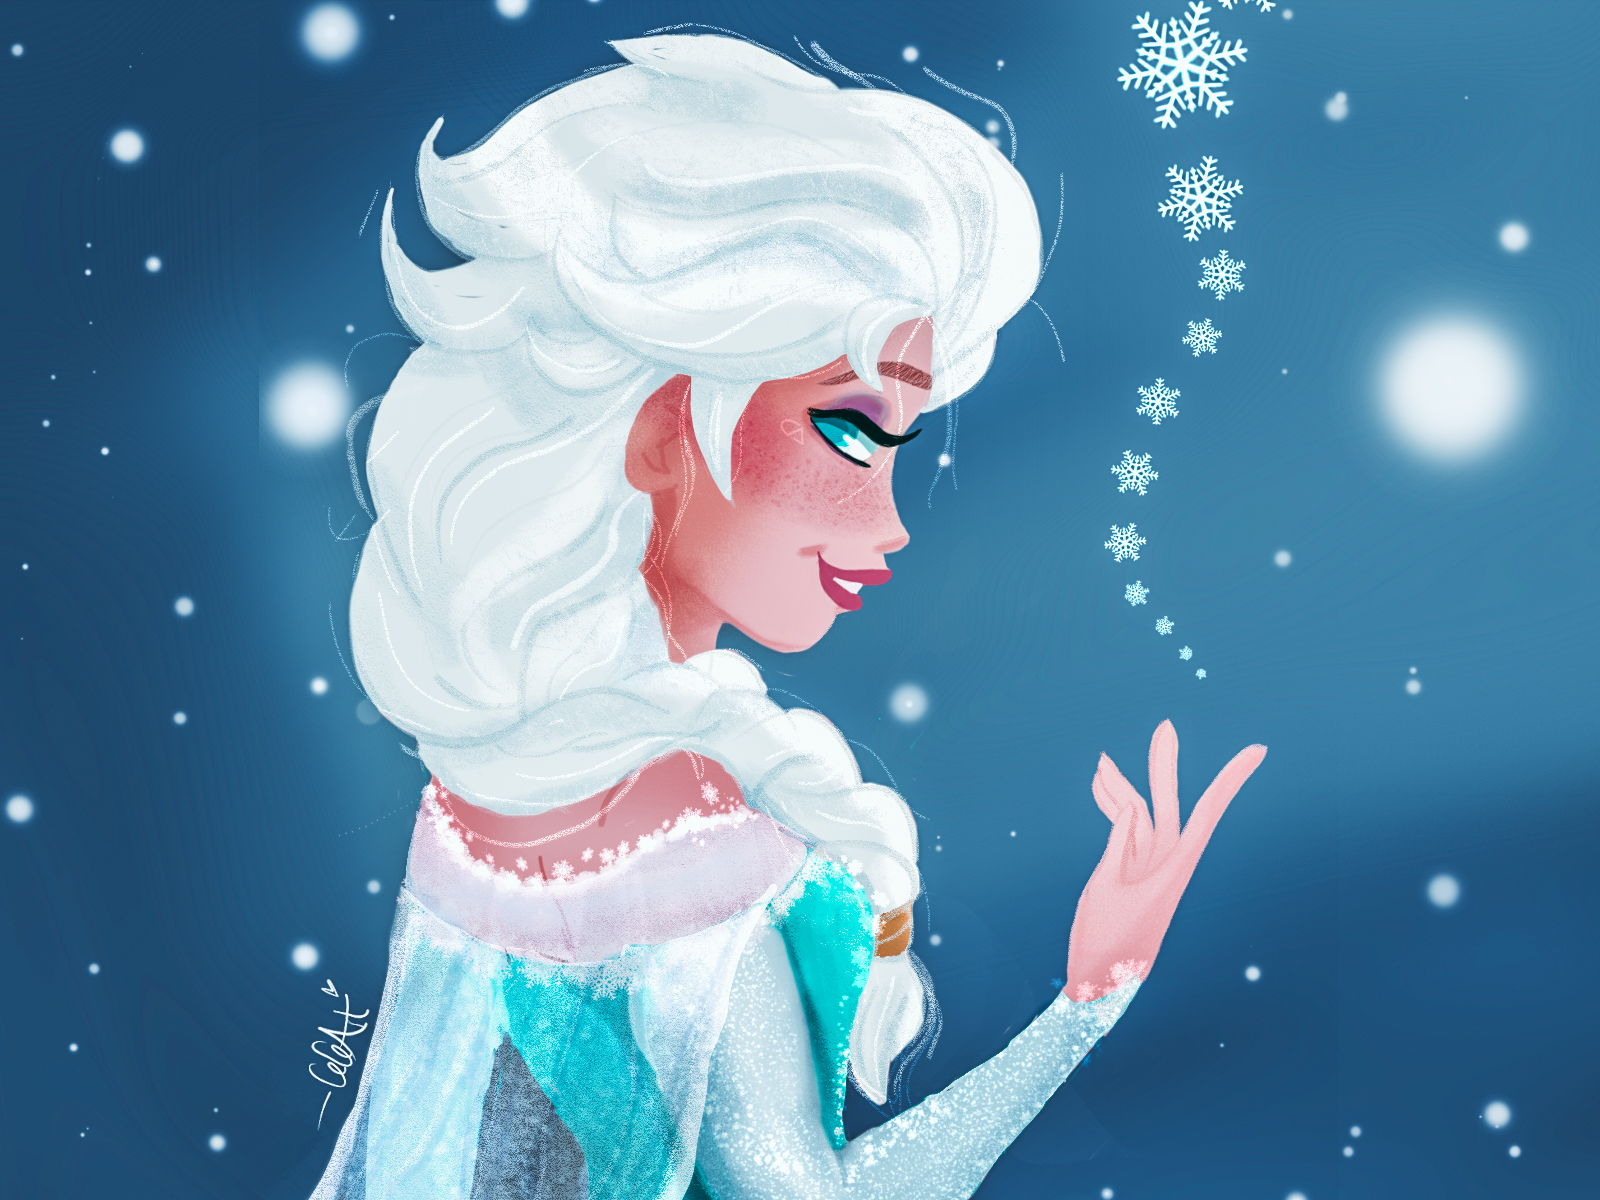 Disney Frozen 2 Elsa Fanart.